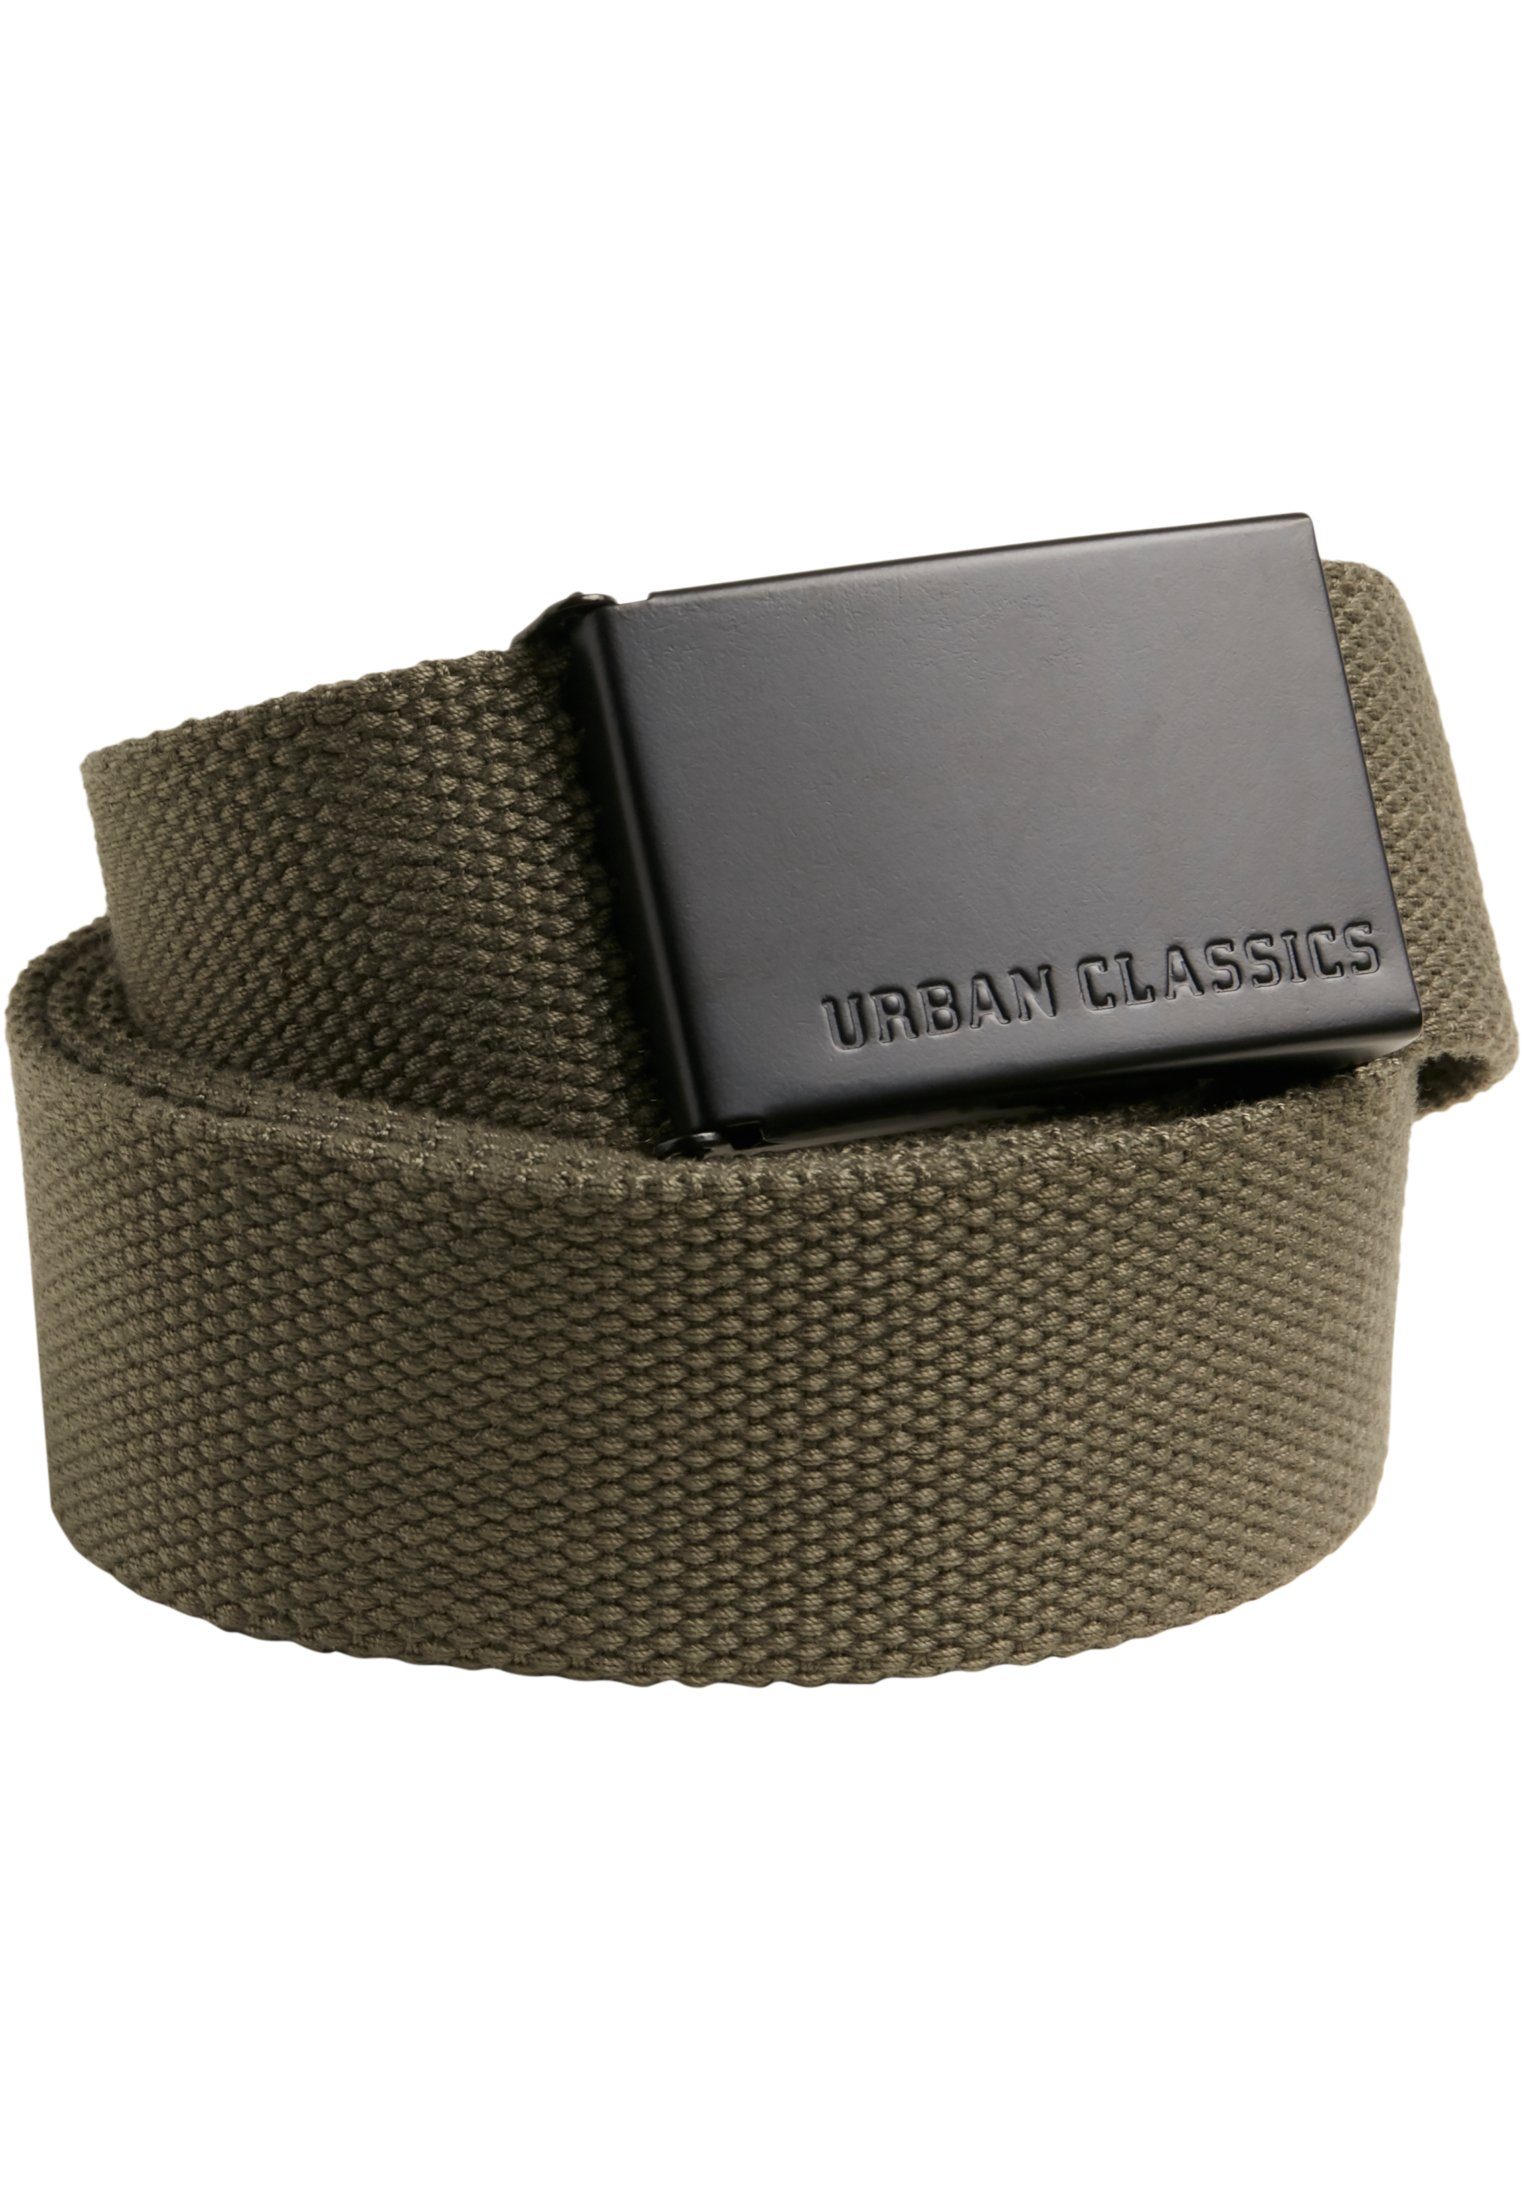 URBAN CLASSICS Hüftgürtel Accessoires Canvas Belts olive-black